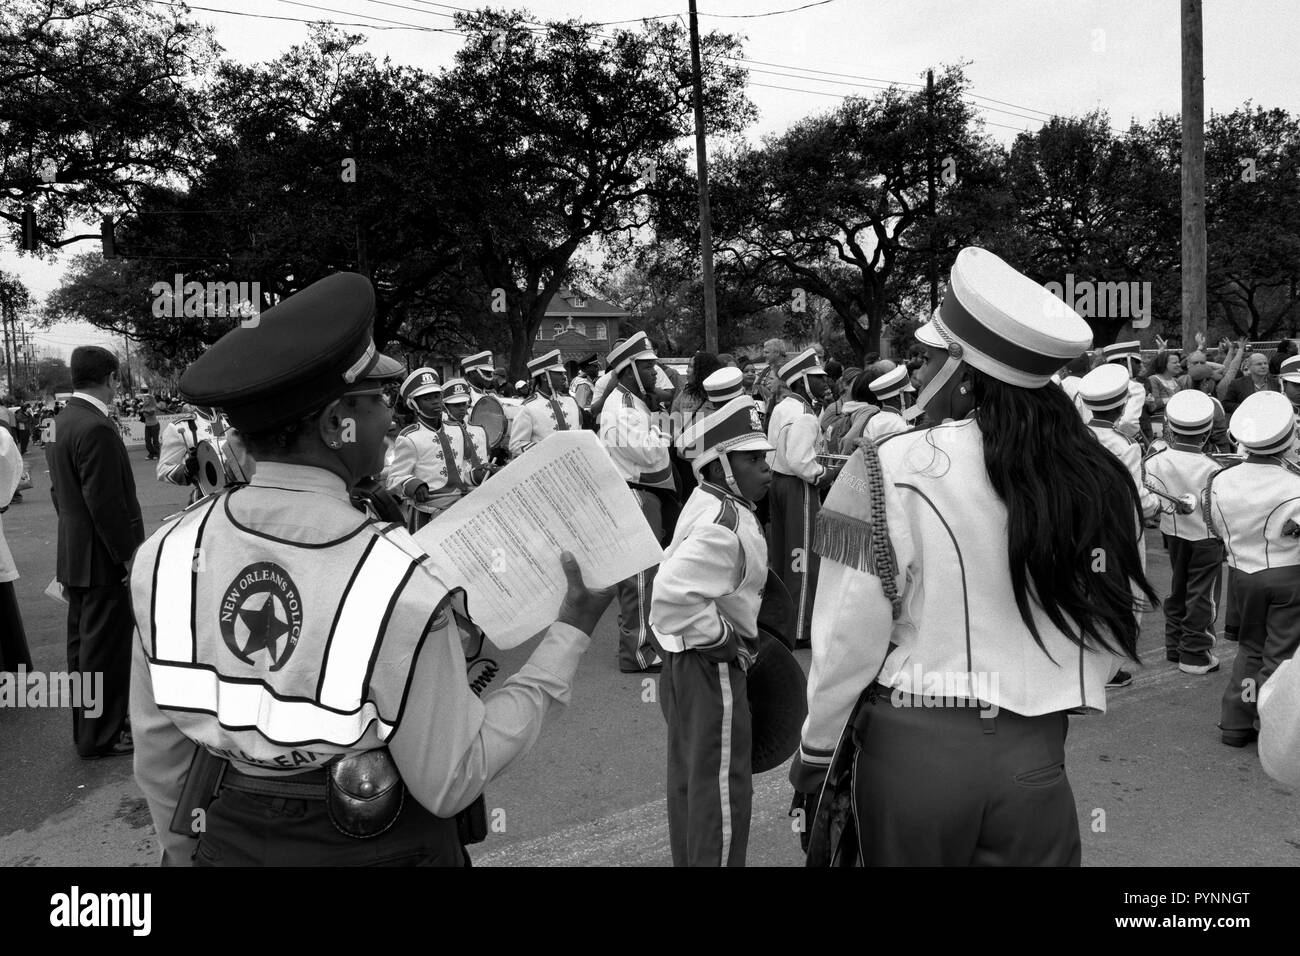 Famille Femme Agent de police parlant à fille en fanfare, le Mardi Gras 2015, Nouvelle-Orléans, Louisiane, Etats-Unis. Banque D'Images